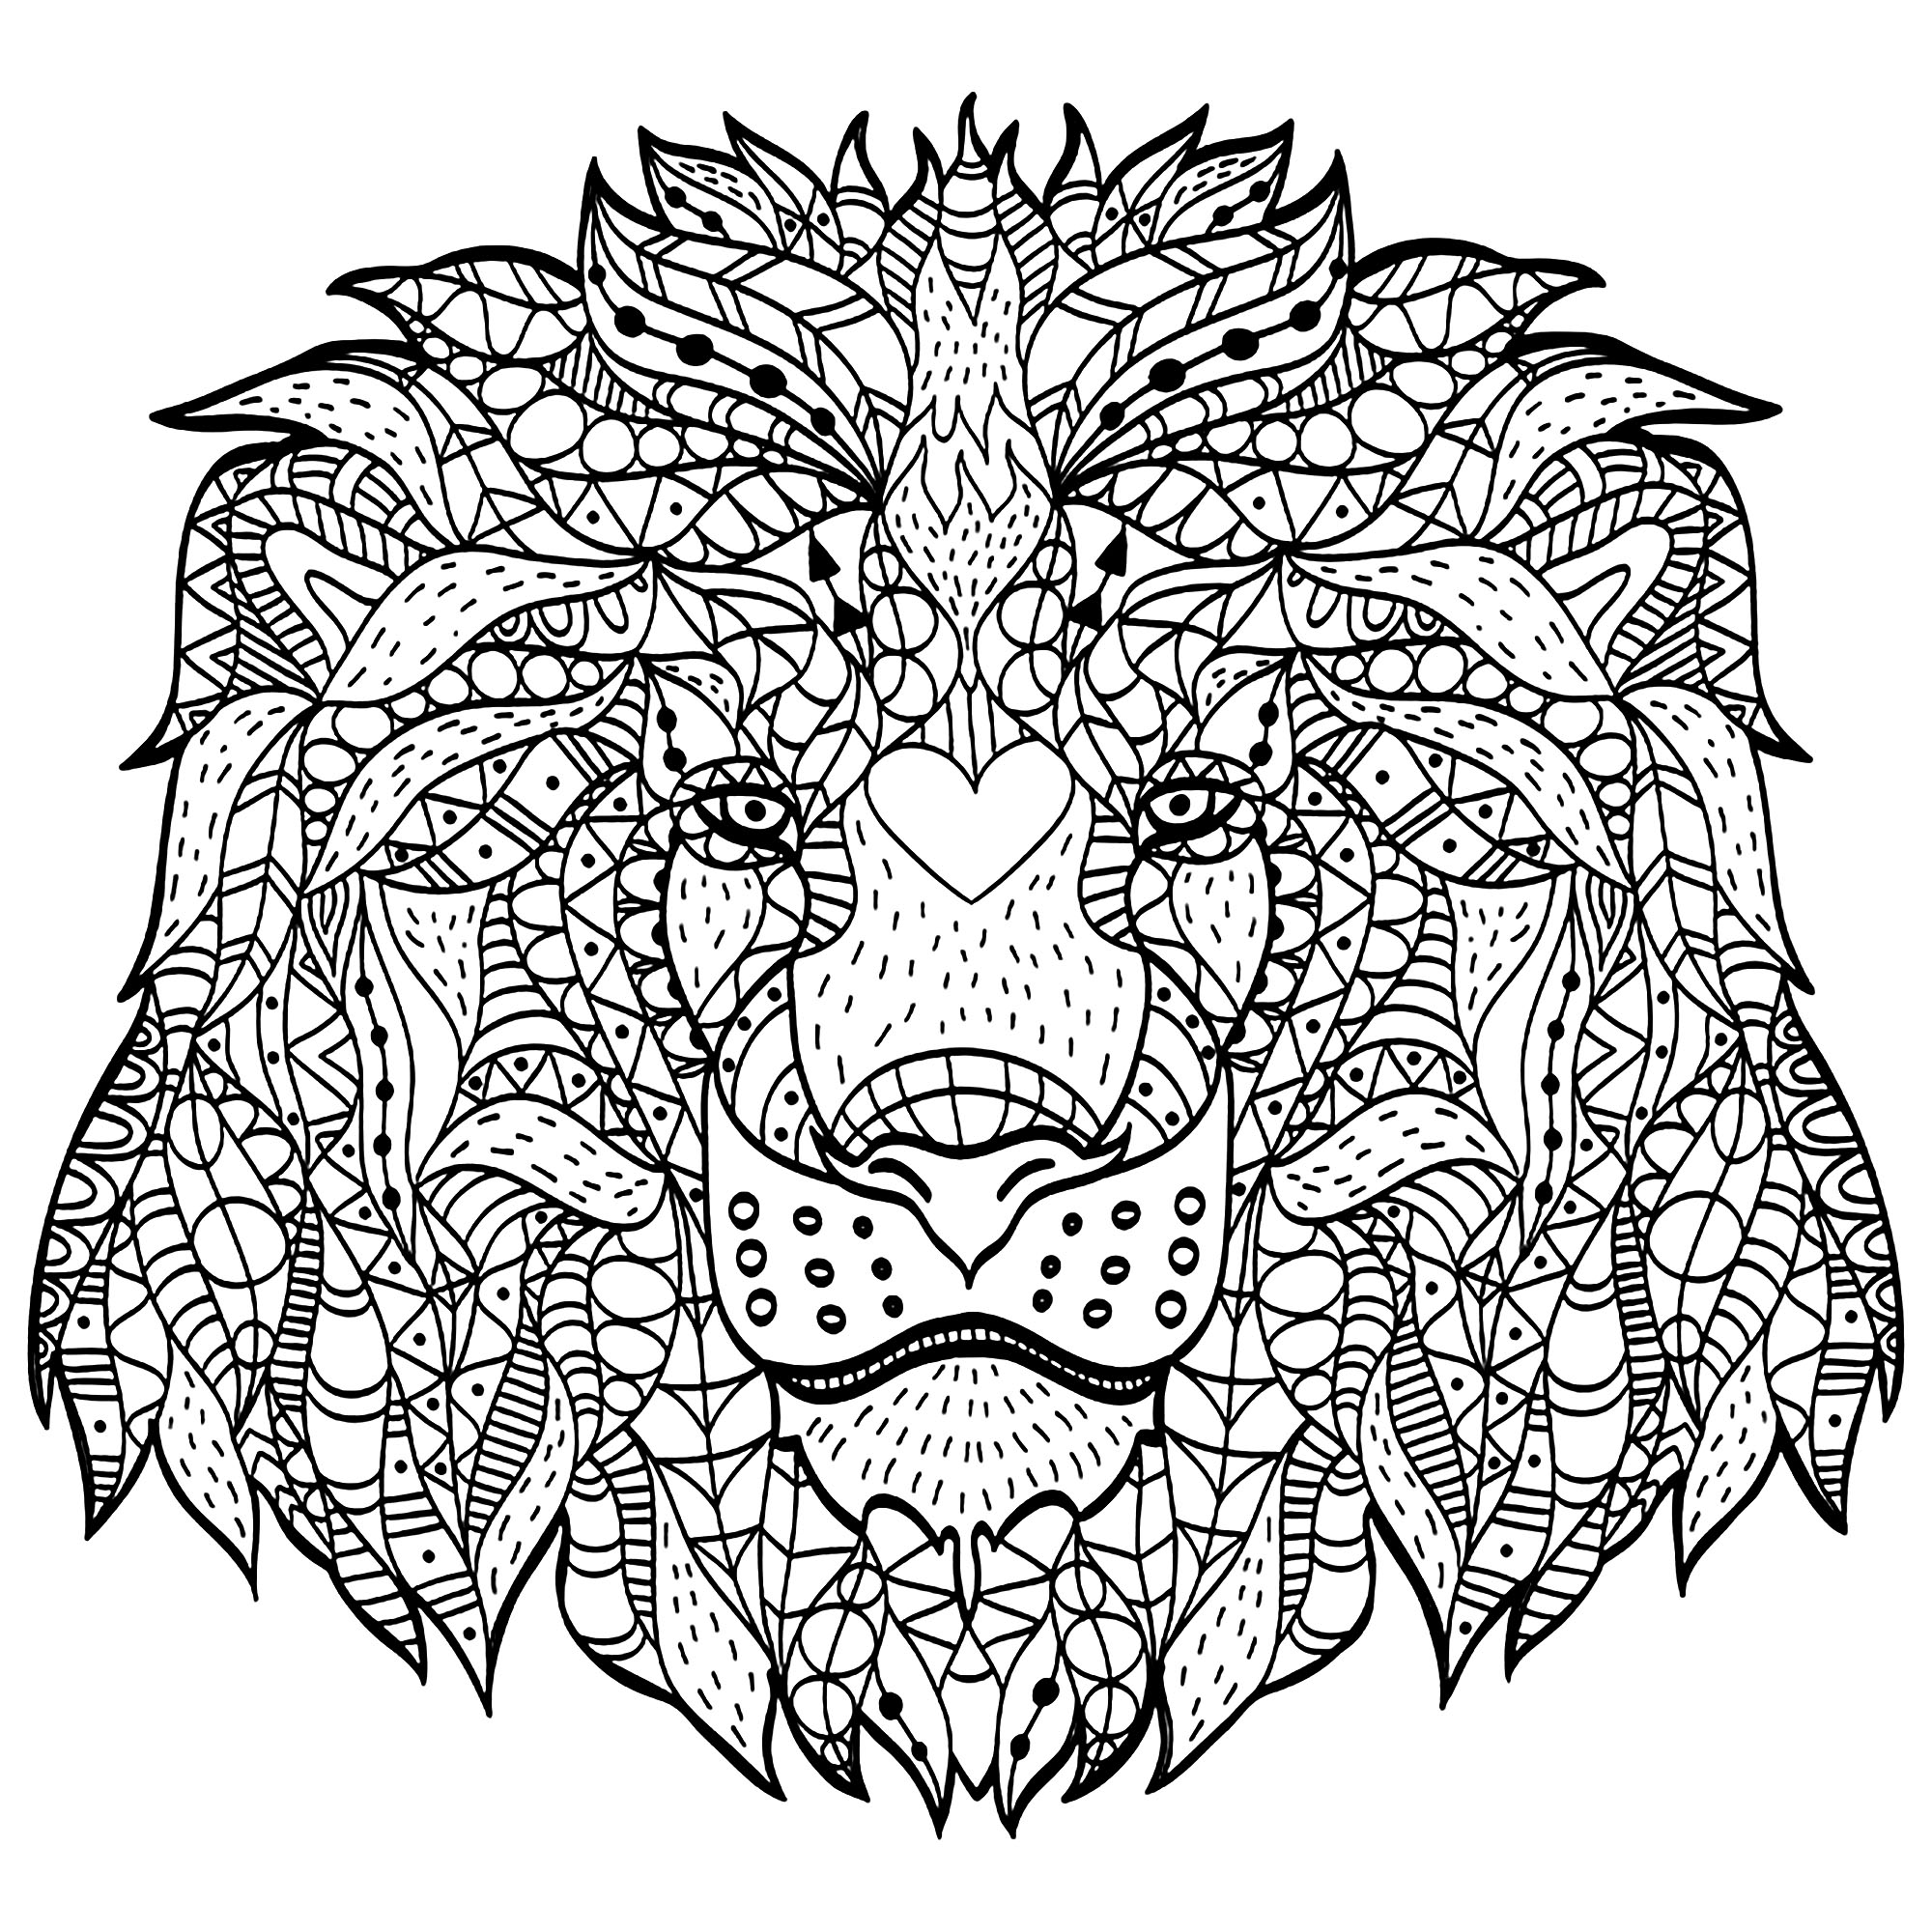 Questa testa di leone creata con motivi Zentangle vi chiederà molta concentrazione! Buon divertimento!